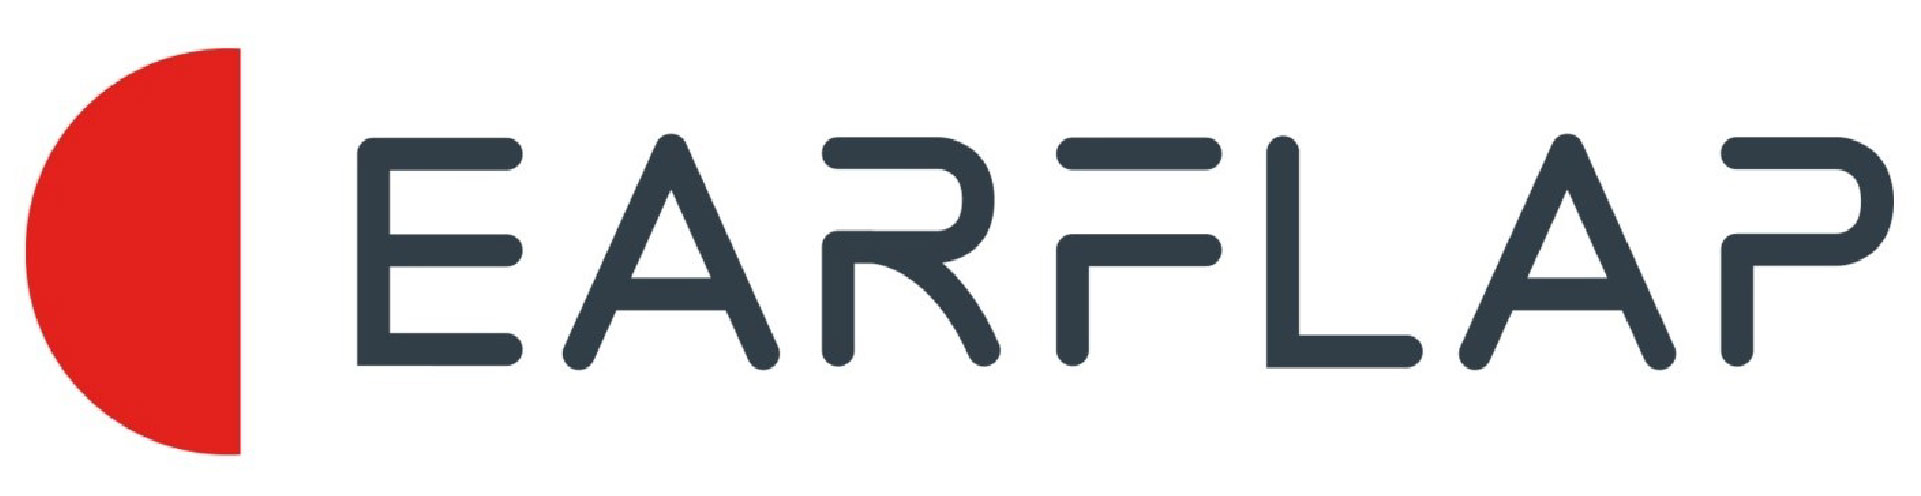 logo-ear-flap